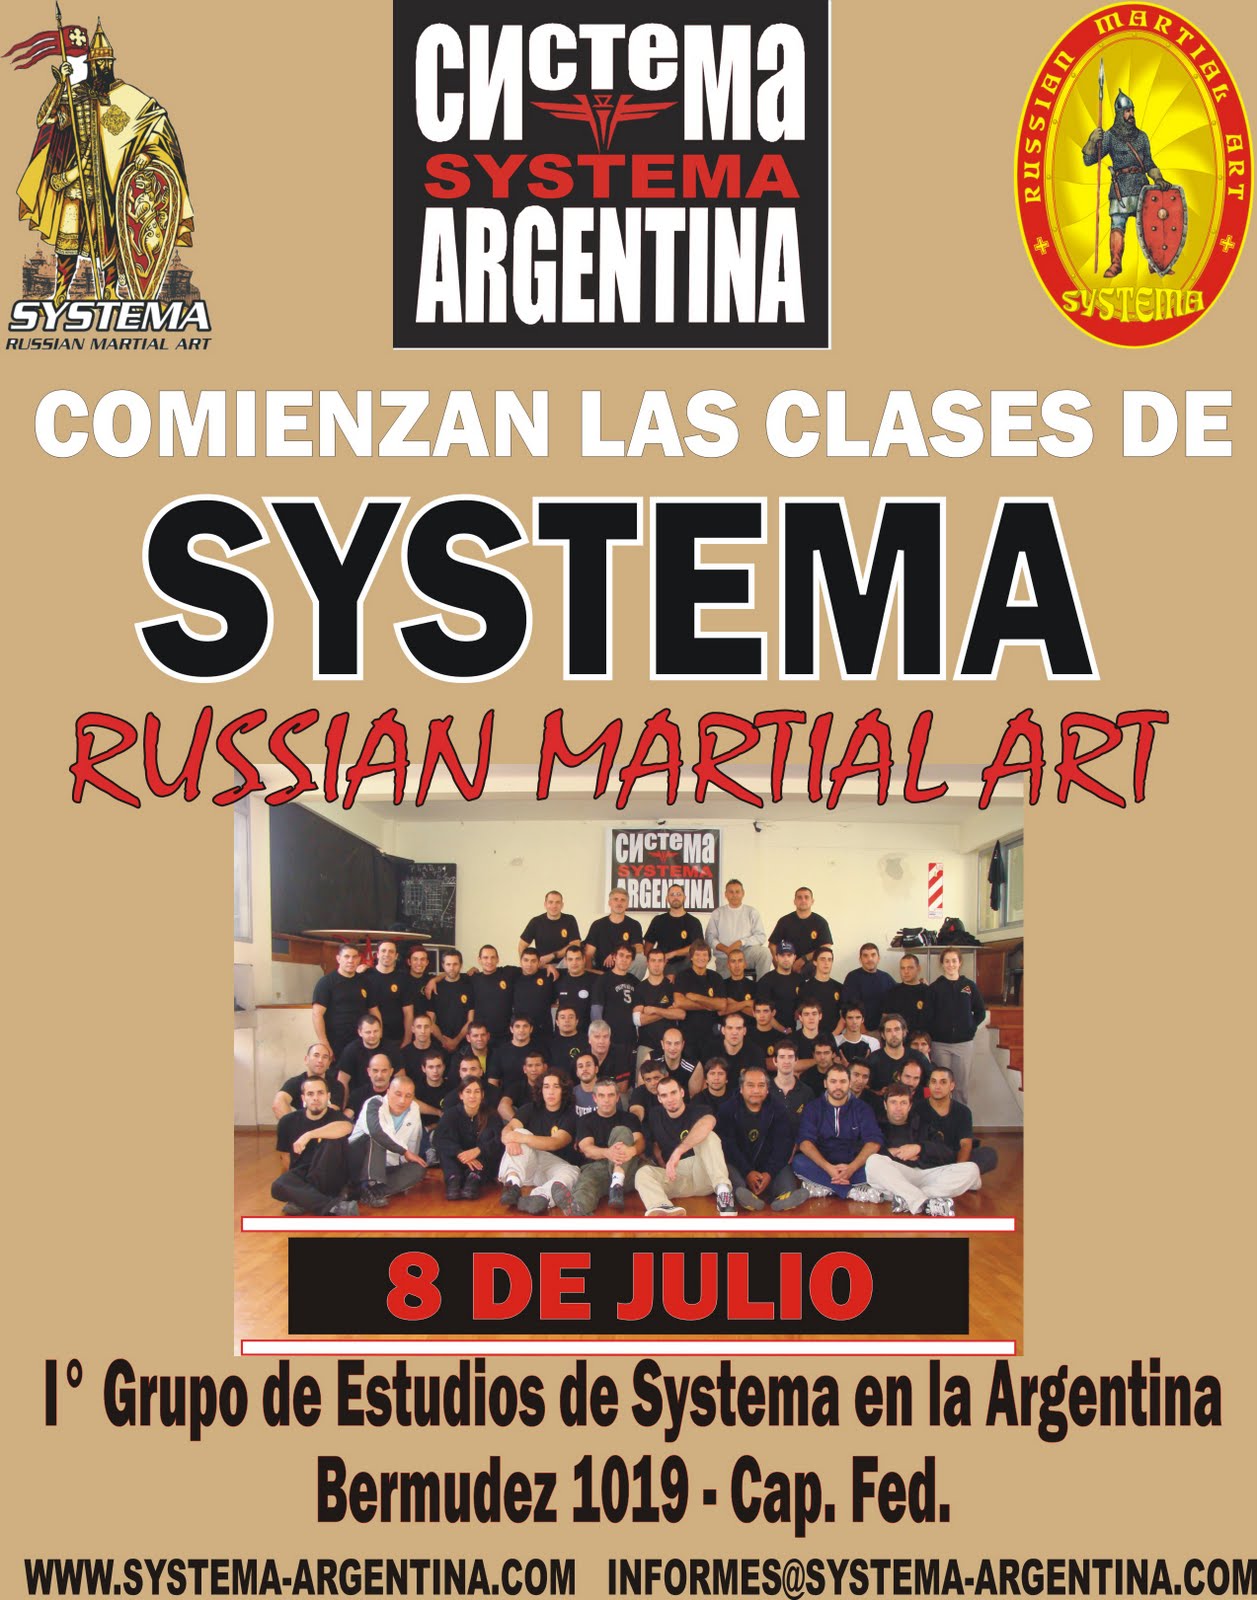 Systema: El arte marcial del siglo 21 en Argentina Clases+Systema.